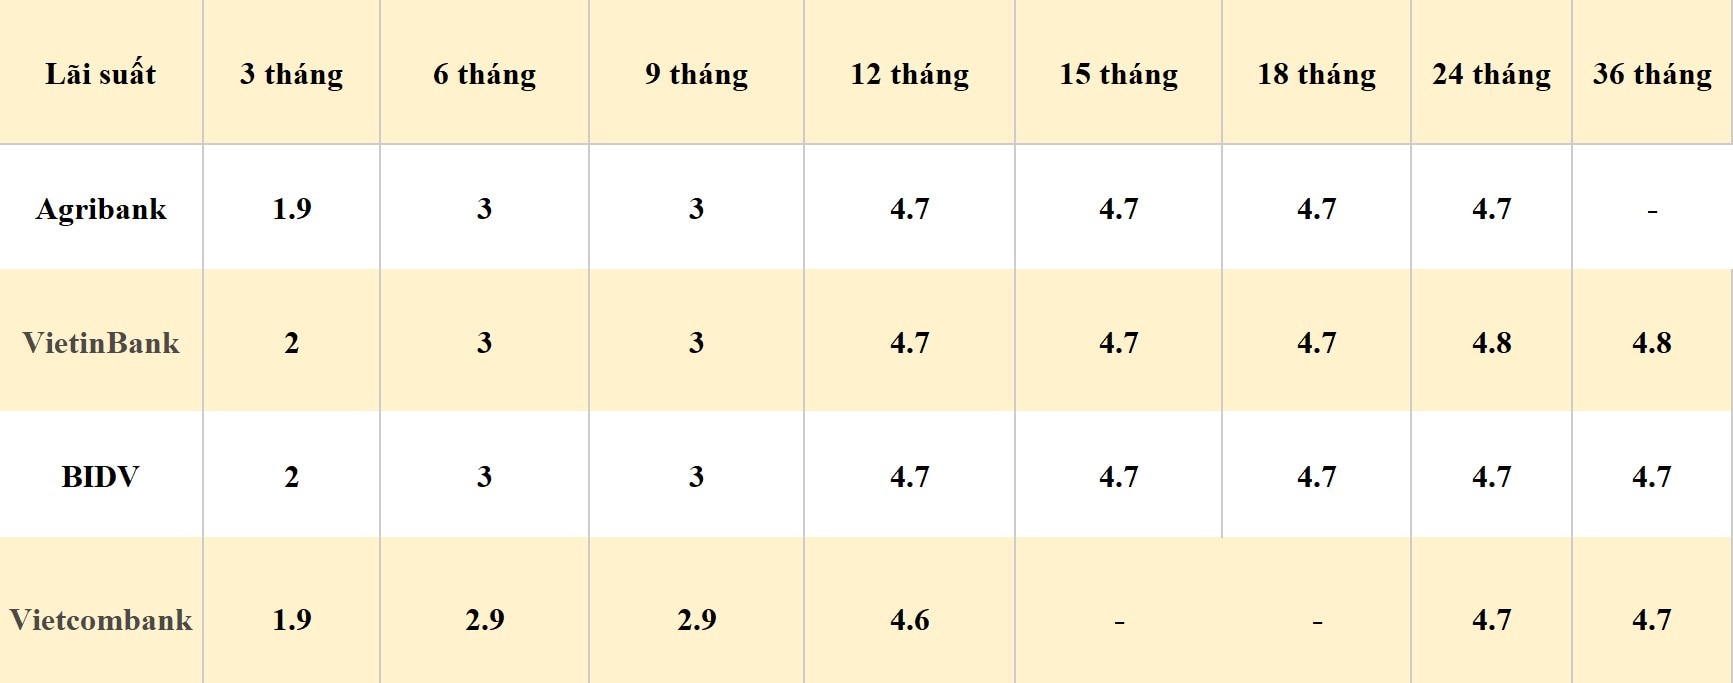 Bảng so sánh lãi suất các kỳ hạn tại Vietcombank, Agribank, VietinBank và BIDV. Số liệu ghi nhận ngày 12.4.2024. Đơn vị tính: %/năm. Bảng: Khương Duy  